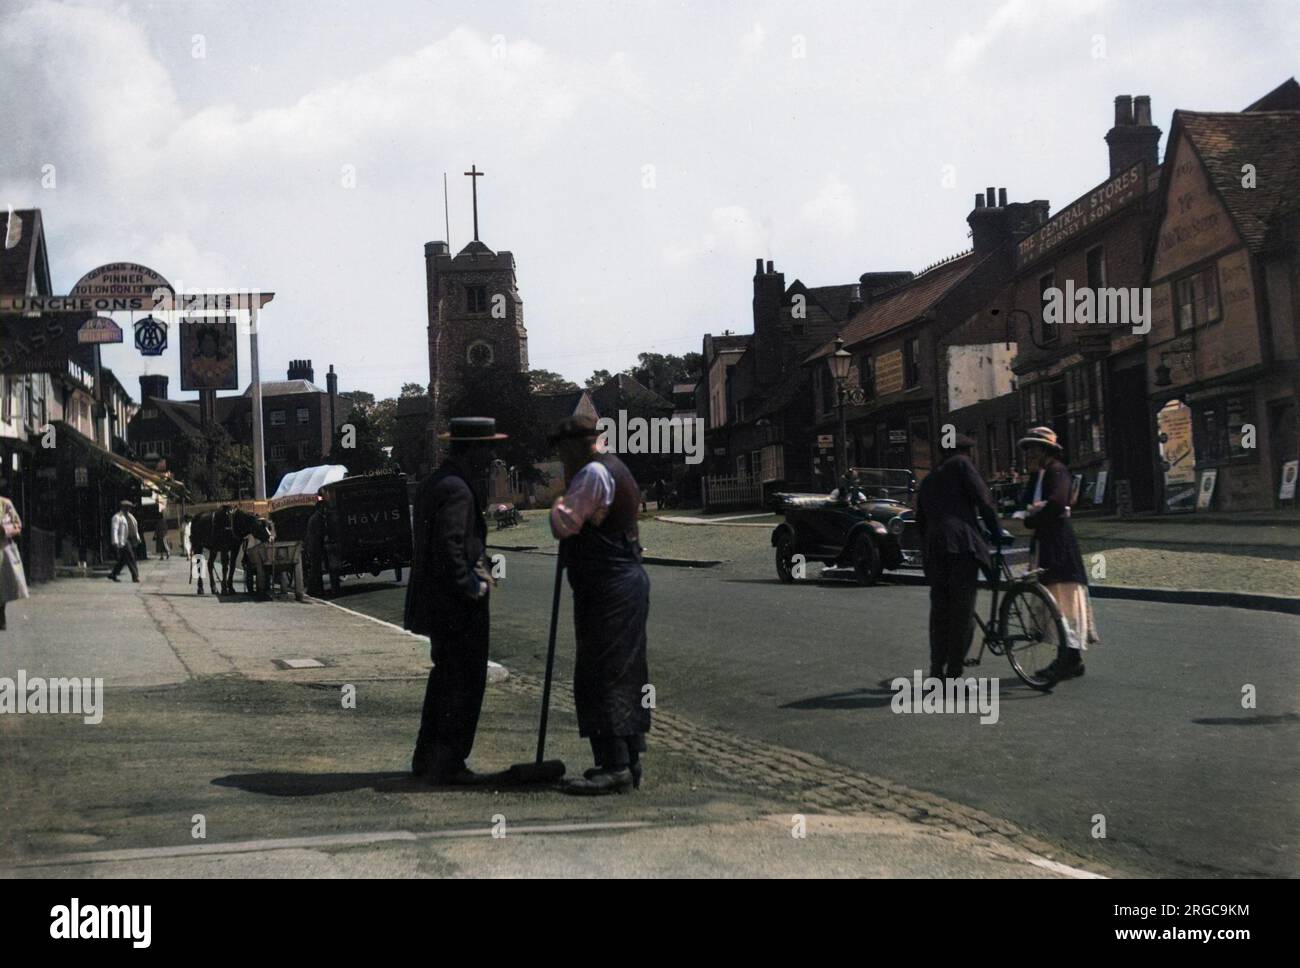 Die Hauptstraße von Pinner, Middlesex, zeigt den Queen's Head und bietet Mittagessen und Tee. Draußen steht ein Hovis-Van. Stockfoto